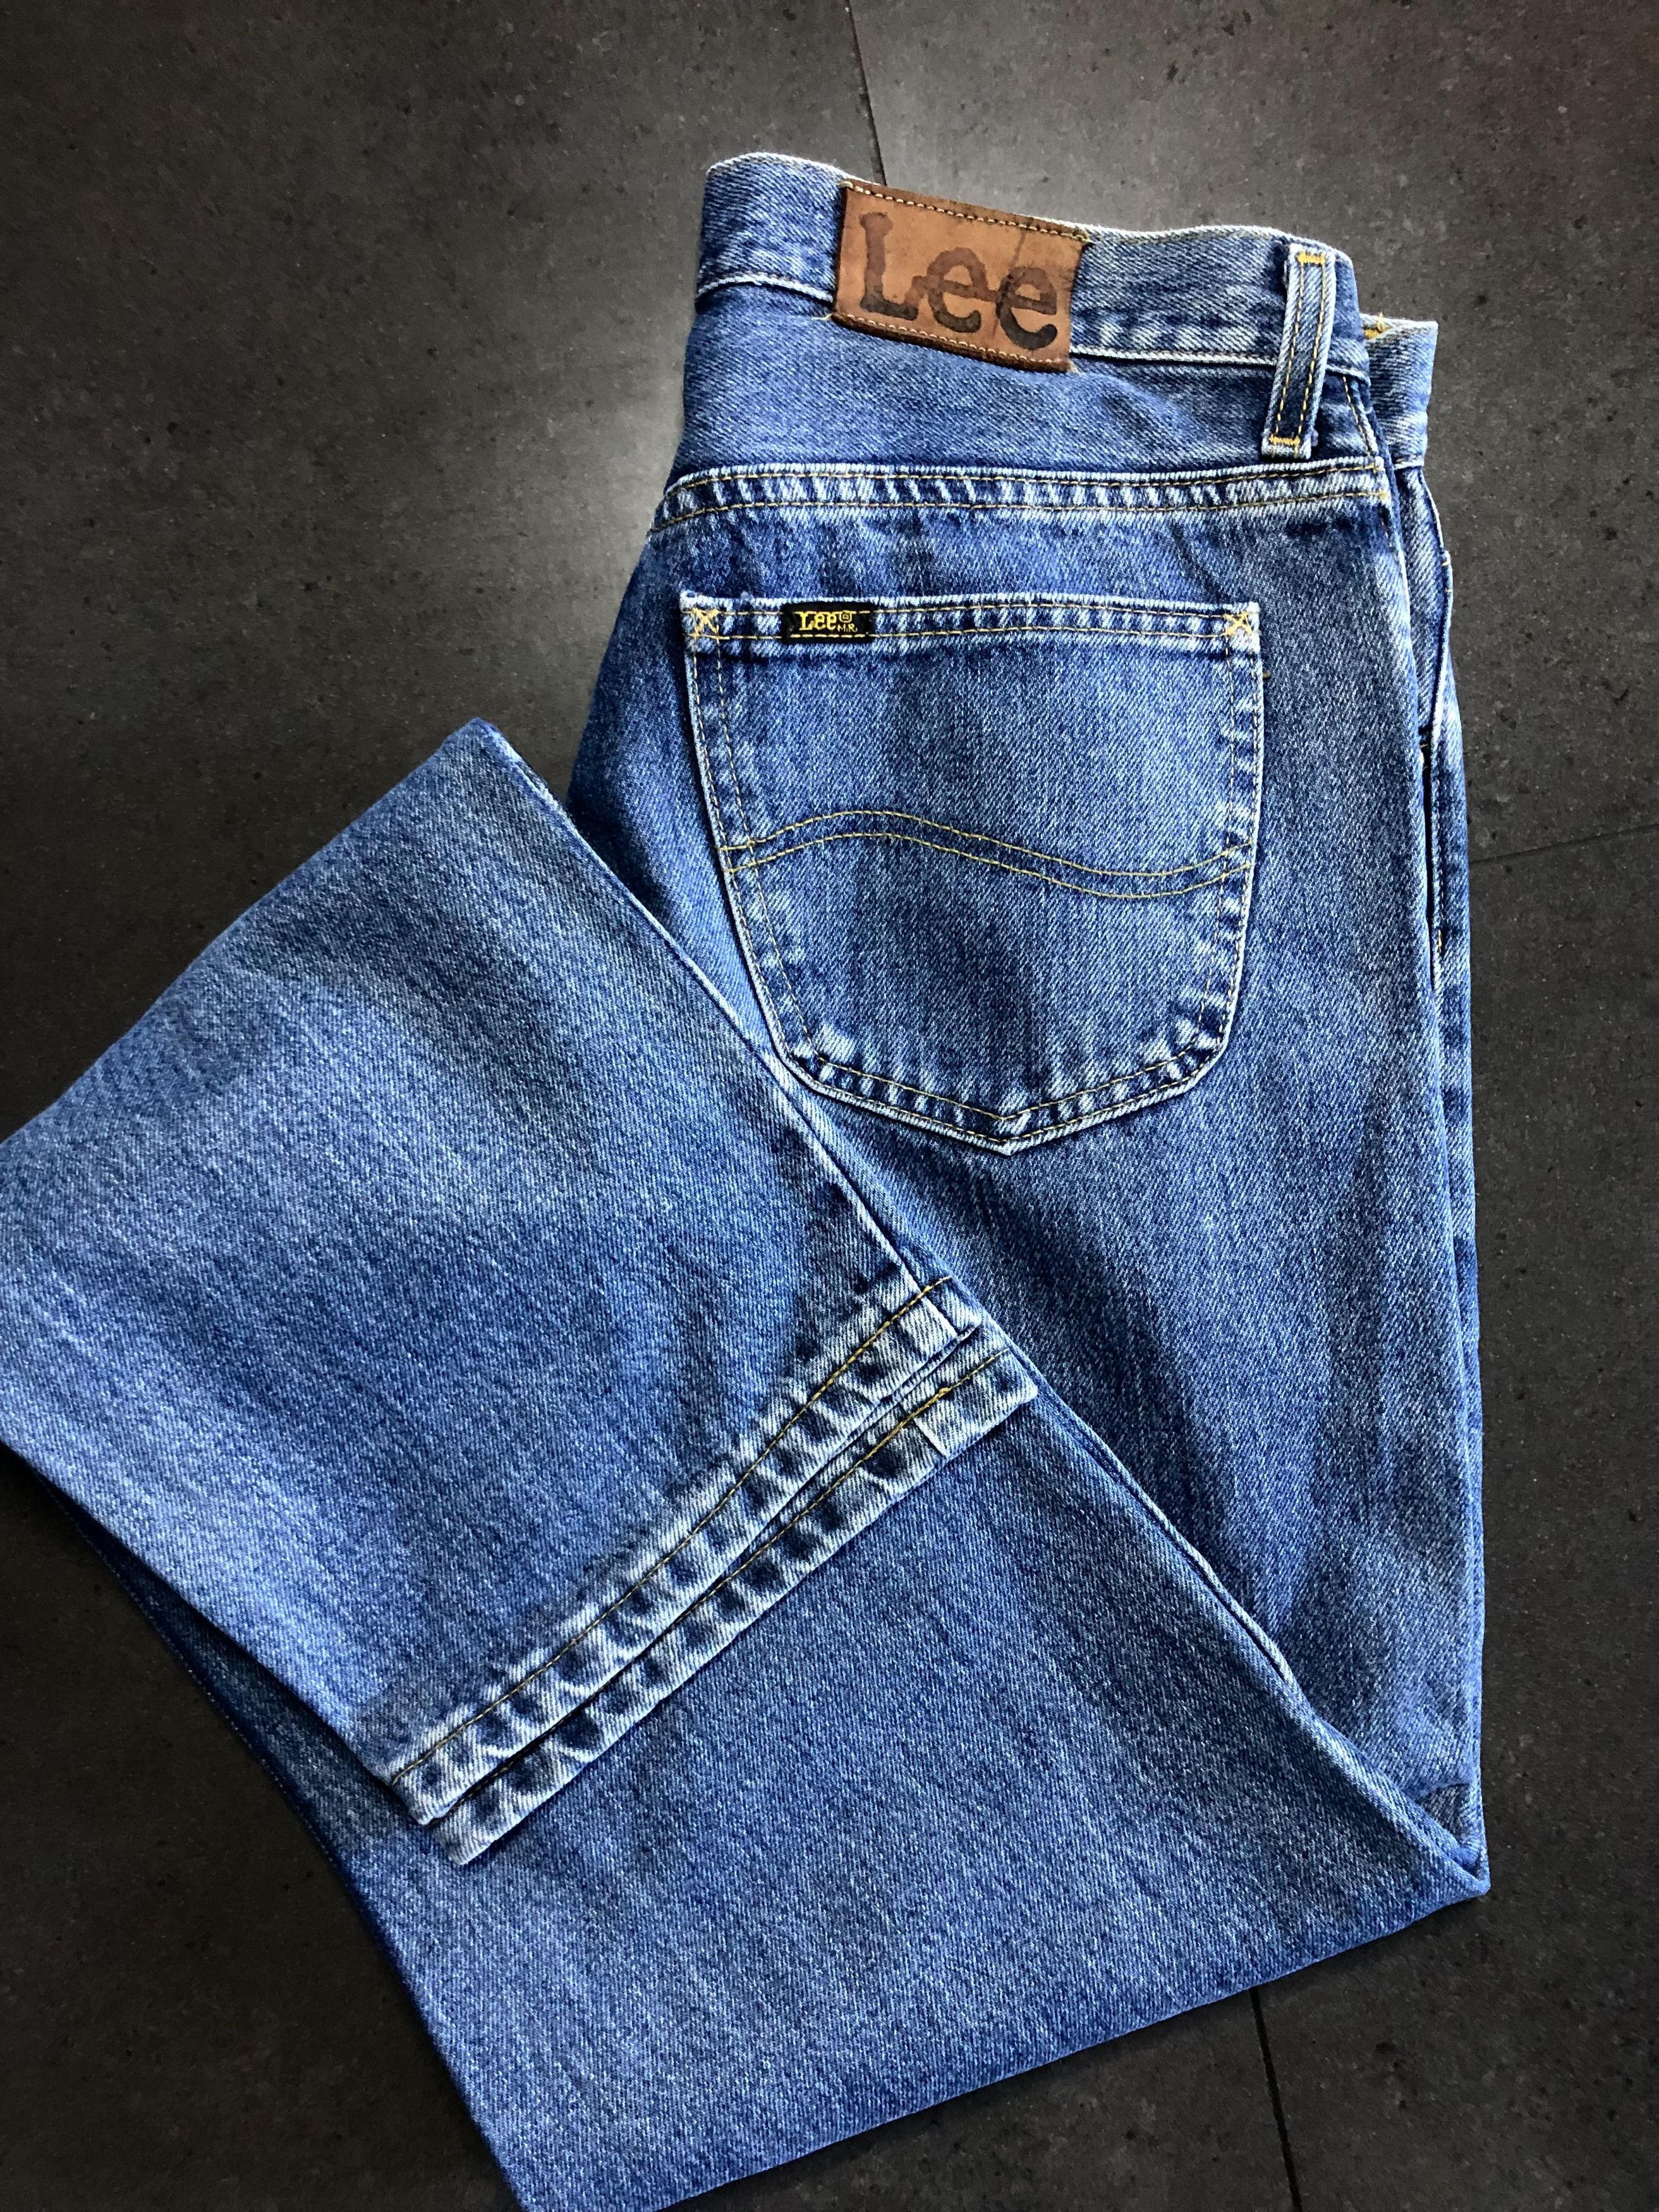 Vintage Lee Jeans Size US 28 / EU 44 - 1 Preview